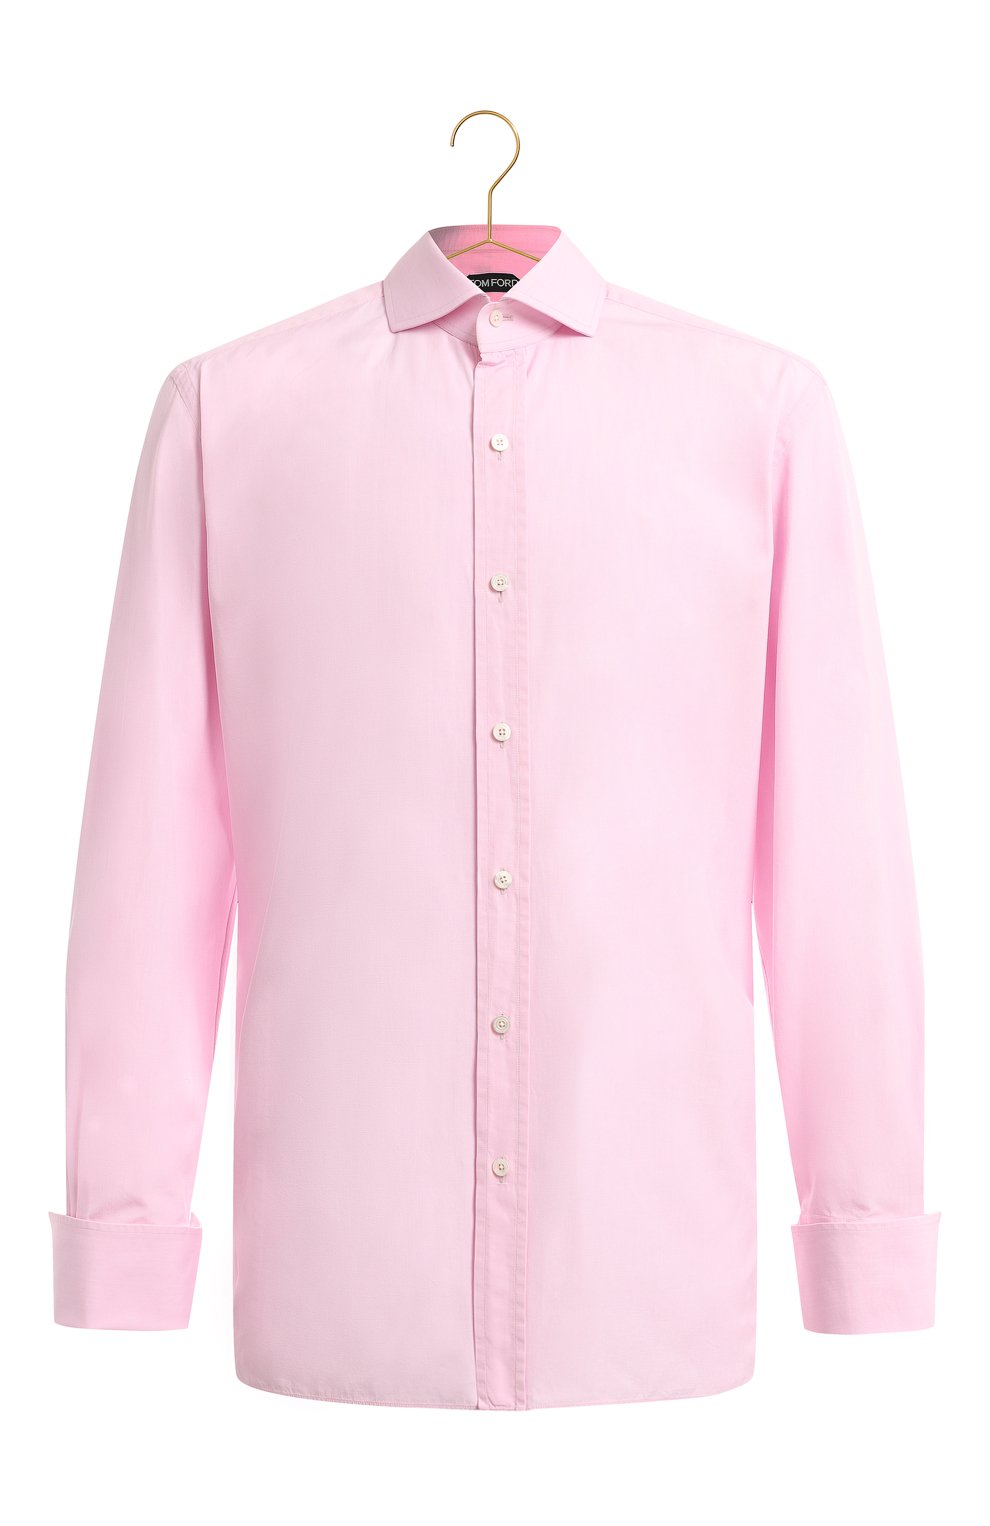 Хлопковая рубашка | Tom Ford | Розовый - 1